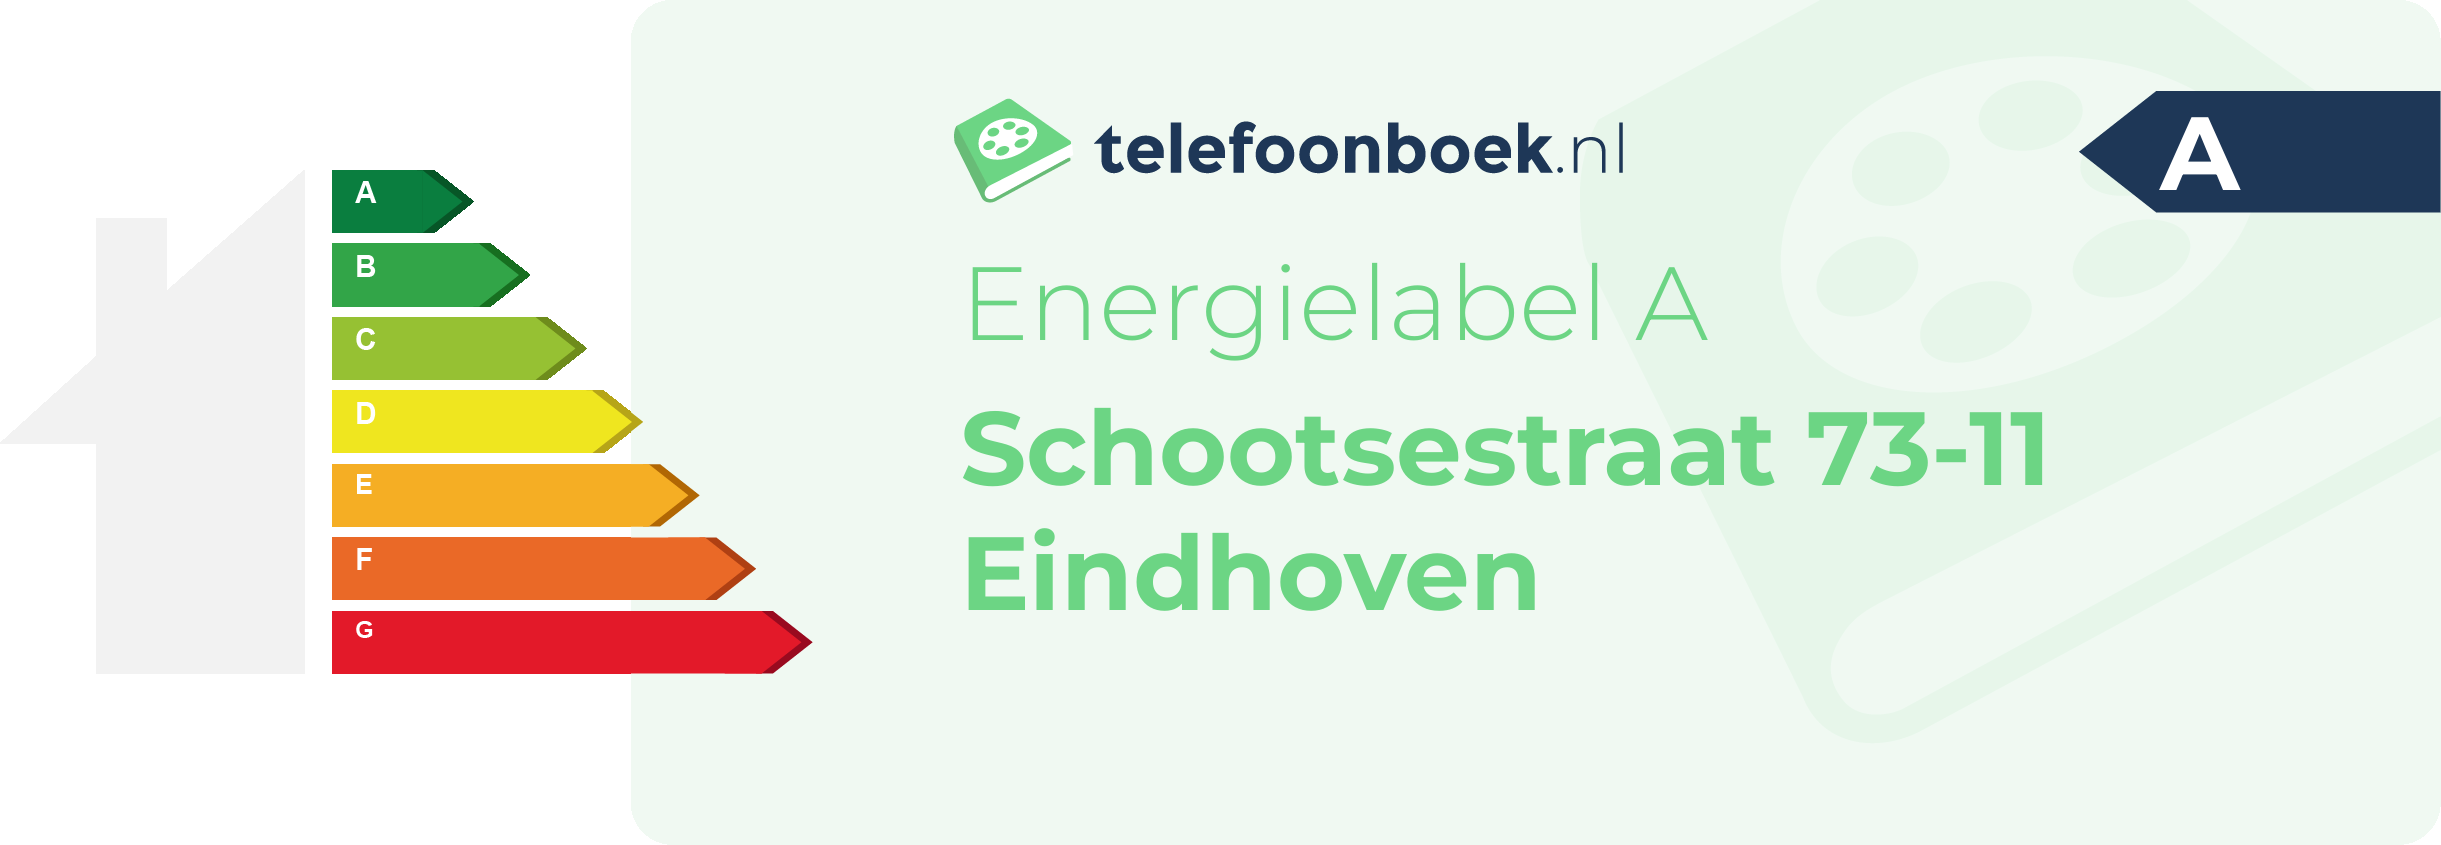 Energielabel Schootsestraat 73-11 Eindhoven